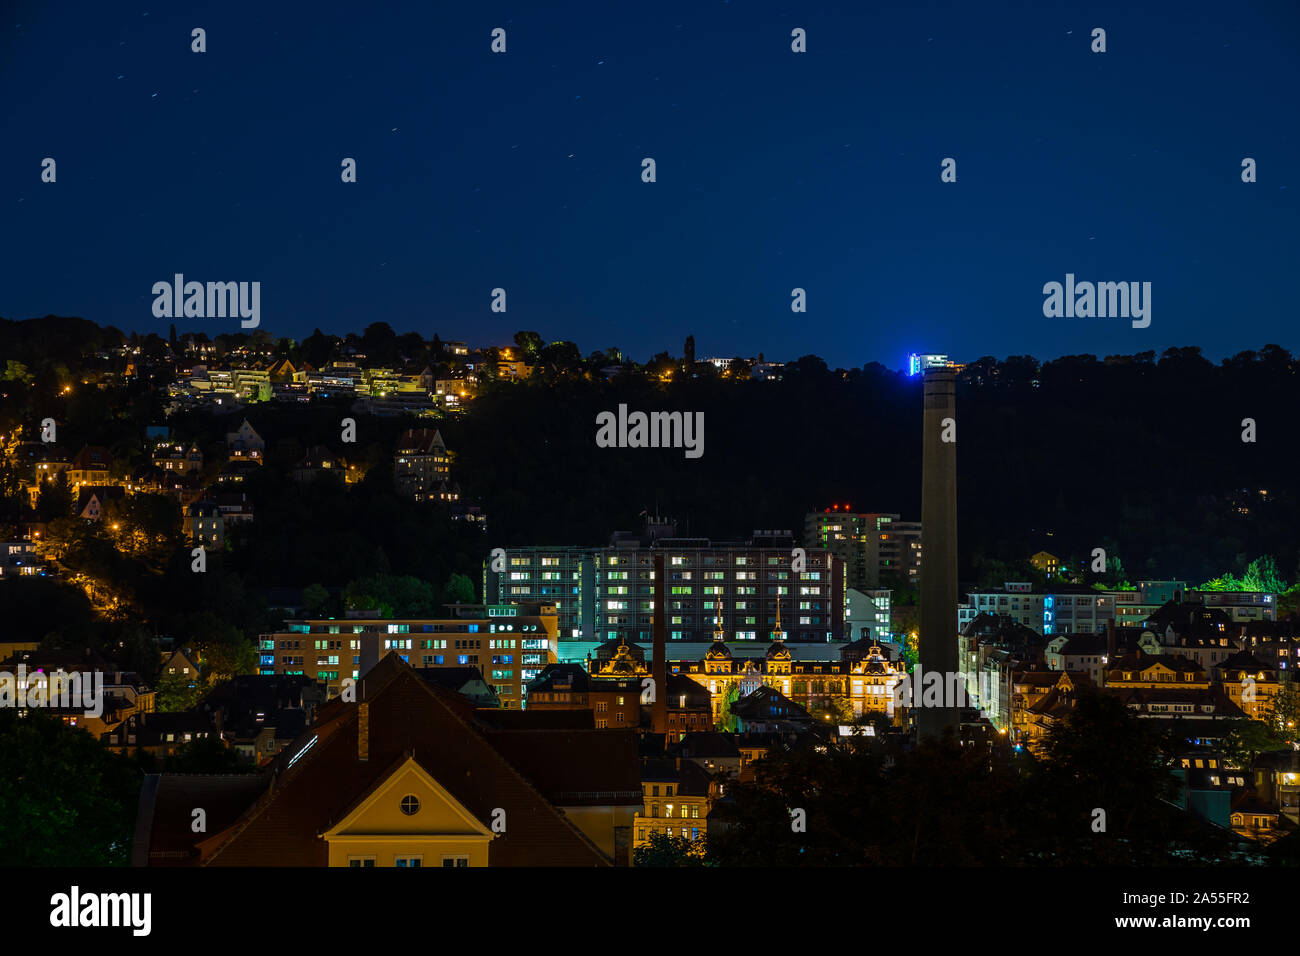 Germania, case illuminate e tetti veduta aerea skyline di Stoccarda heslach distretto di notte sotto il cielo stellato Foto Stock